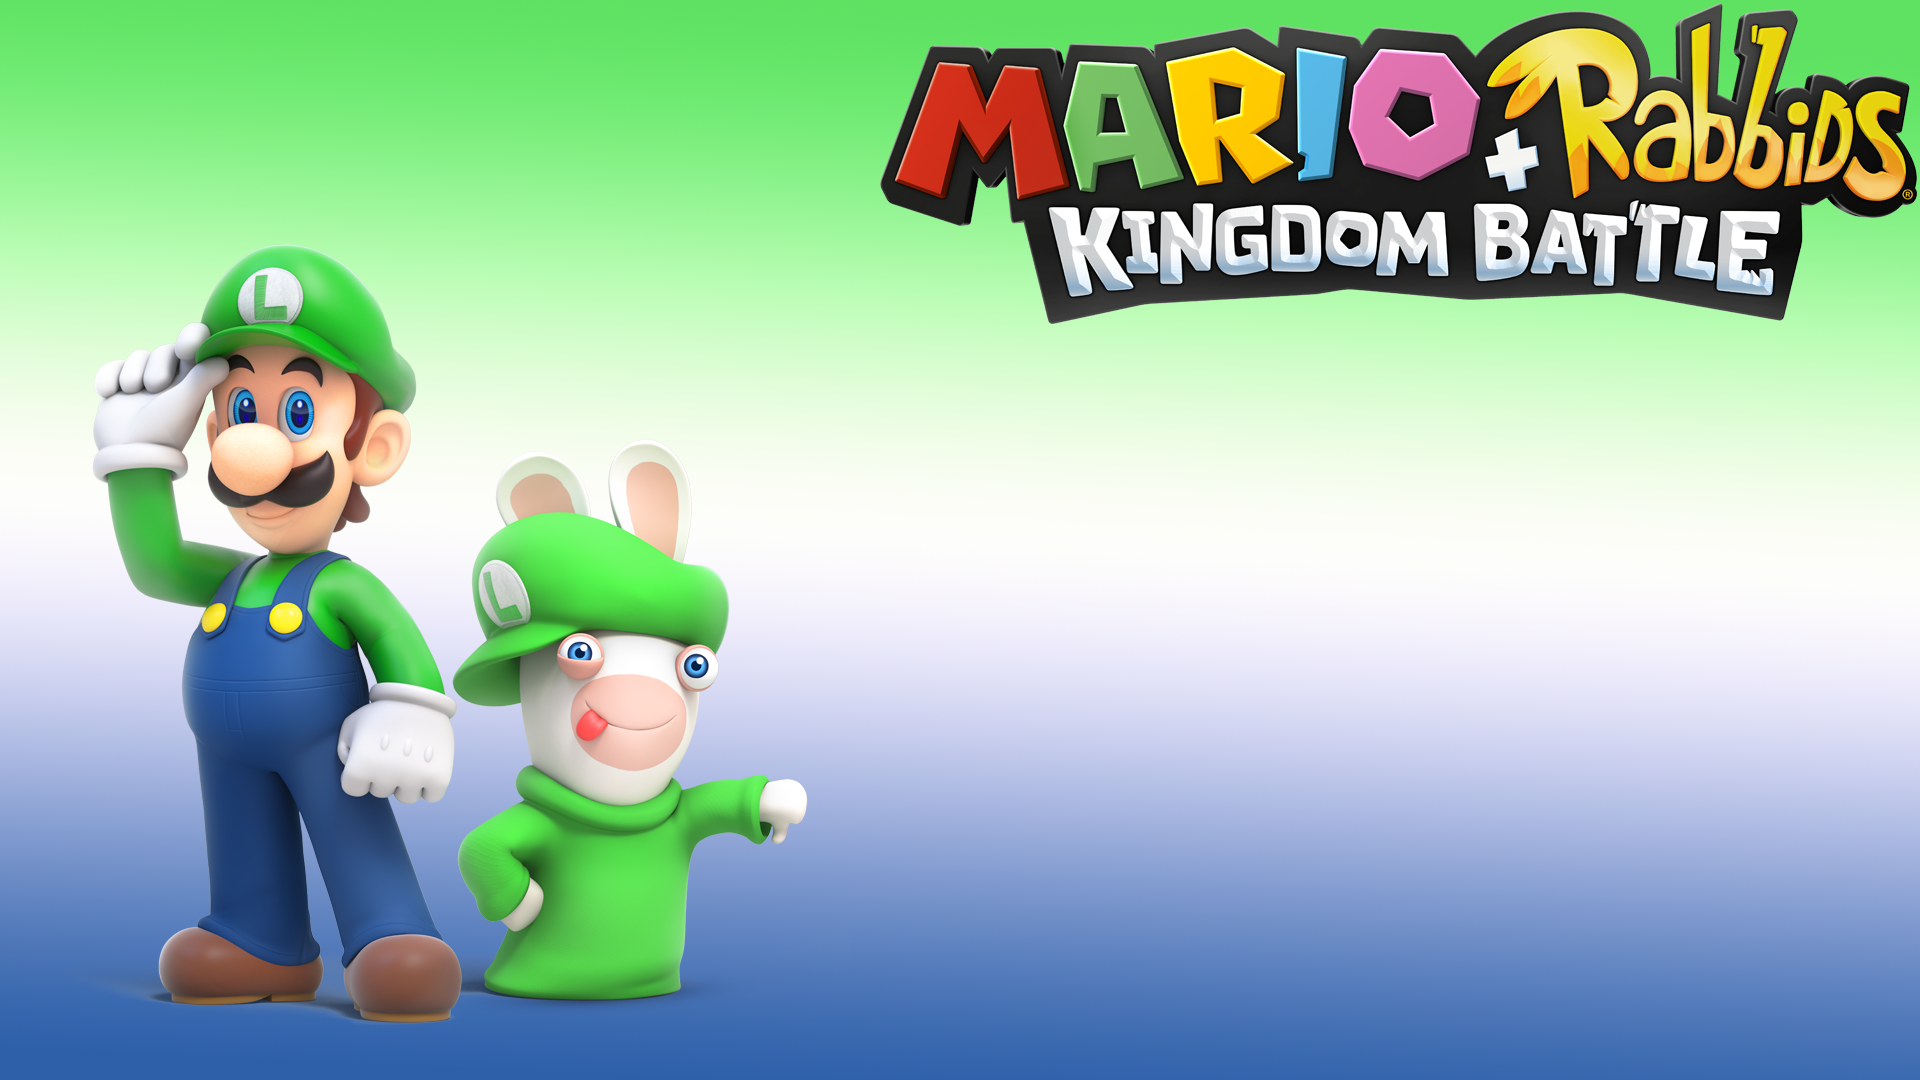 Jeux Vidéo Mario + Rabbids Kingdom Battle Fond d'écran HD | Image